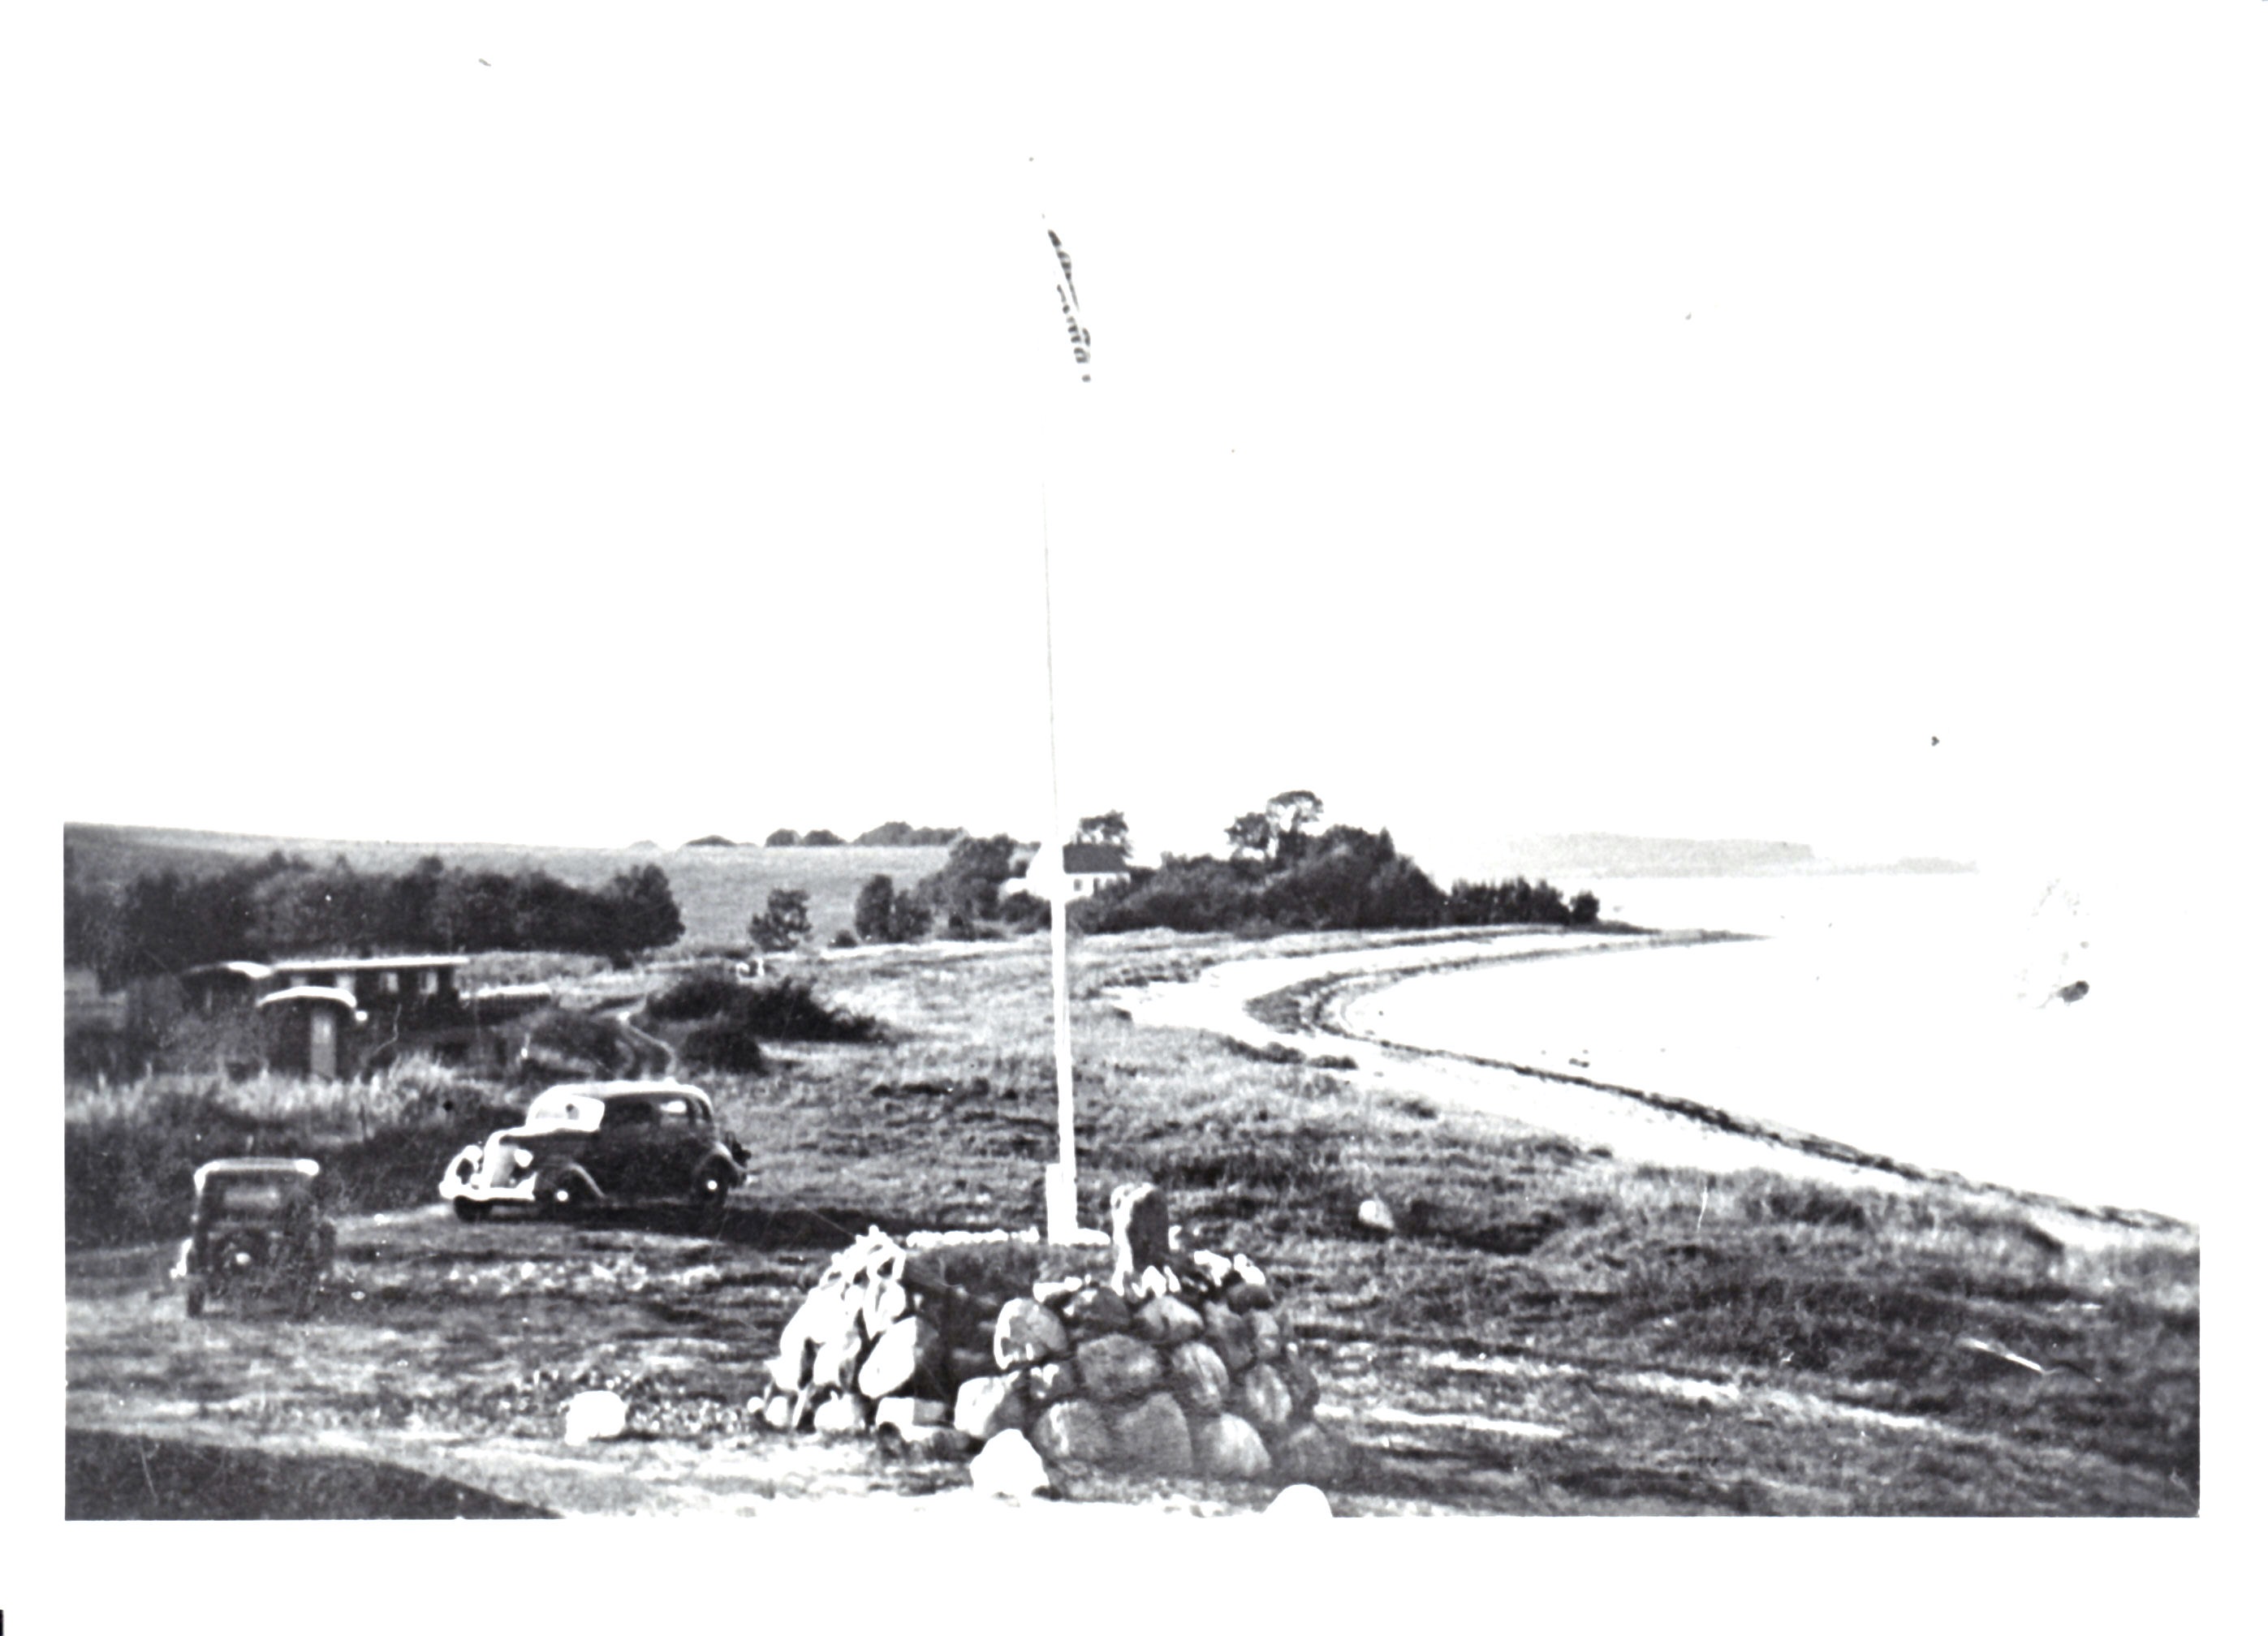 Udsigt o stranden ved Loddenhøj 1937